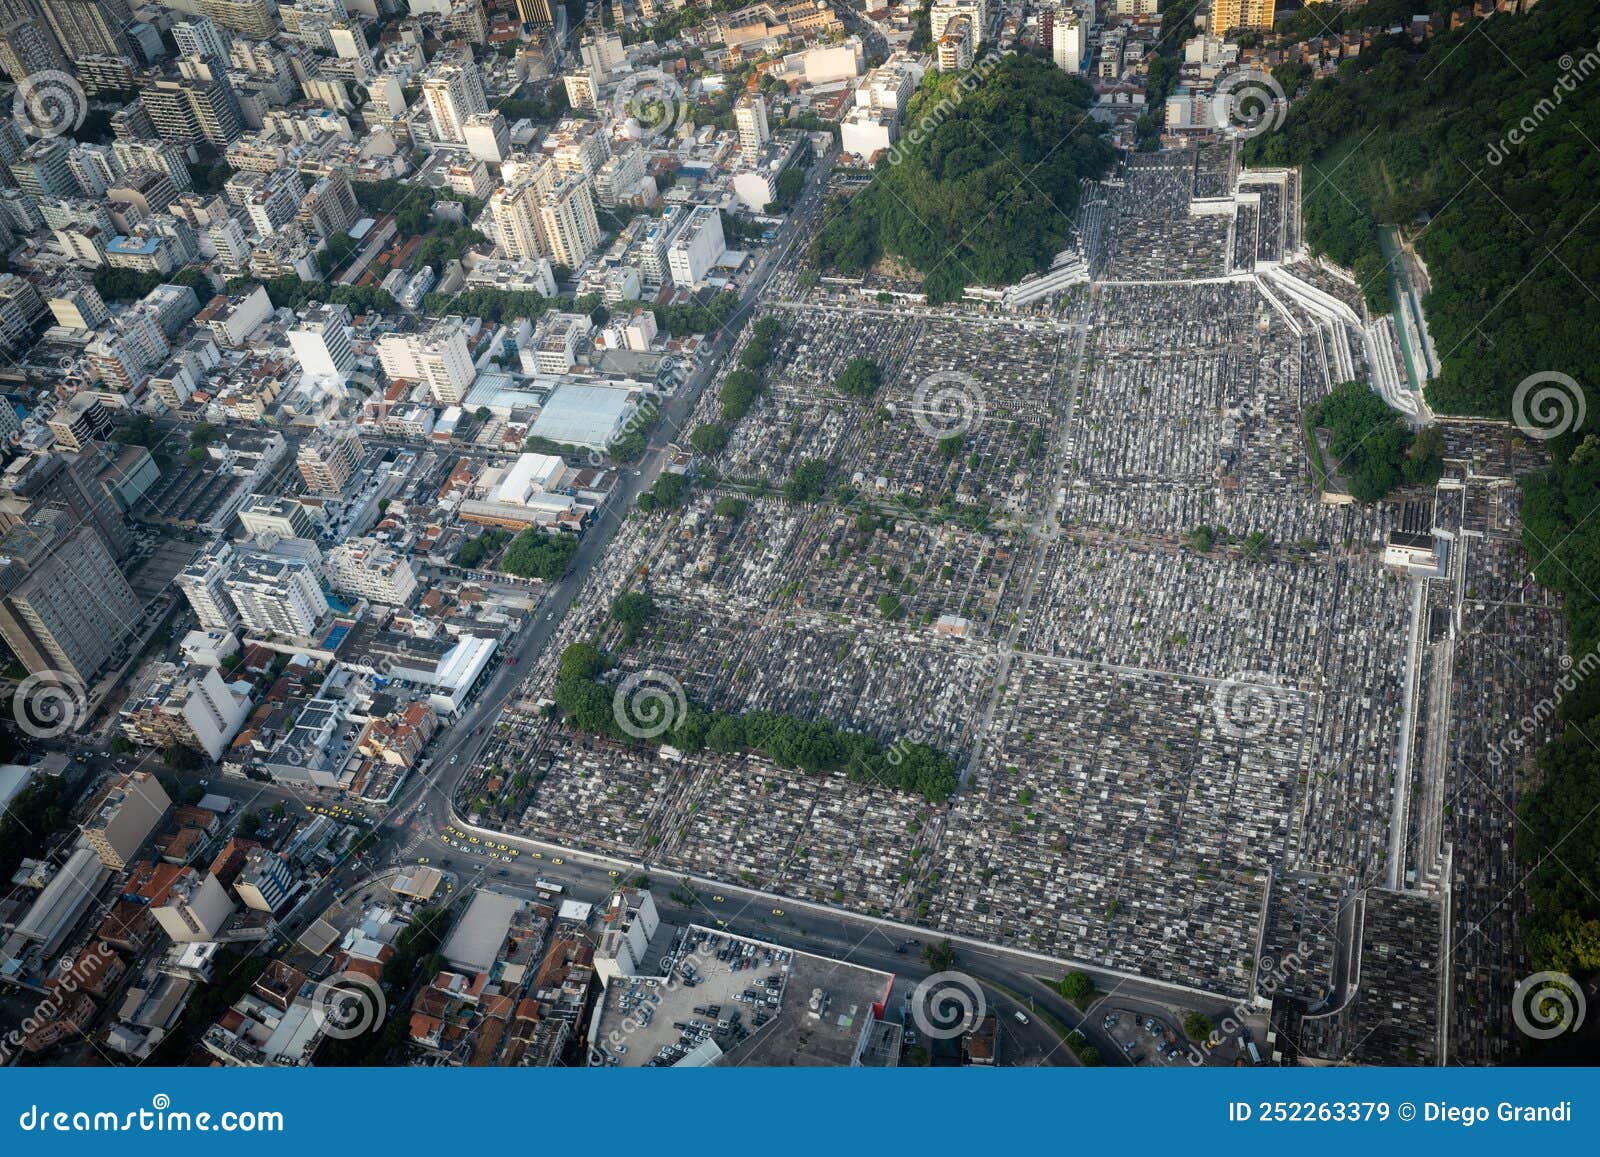 aerial view of sao joao batista cemetery - rio de janeiro, brazil